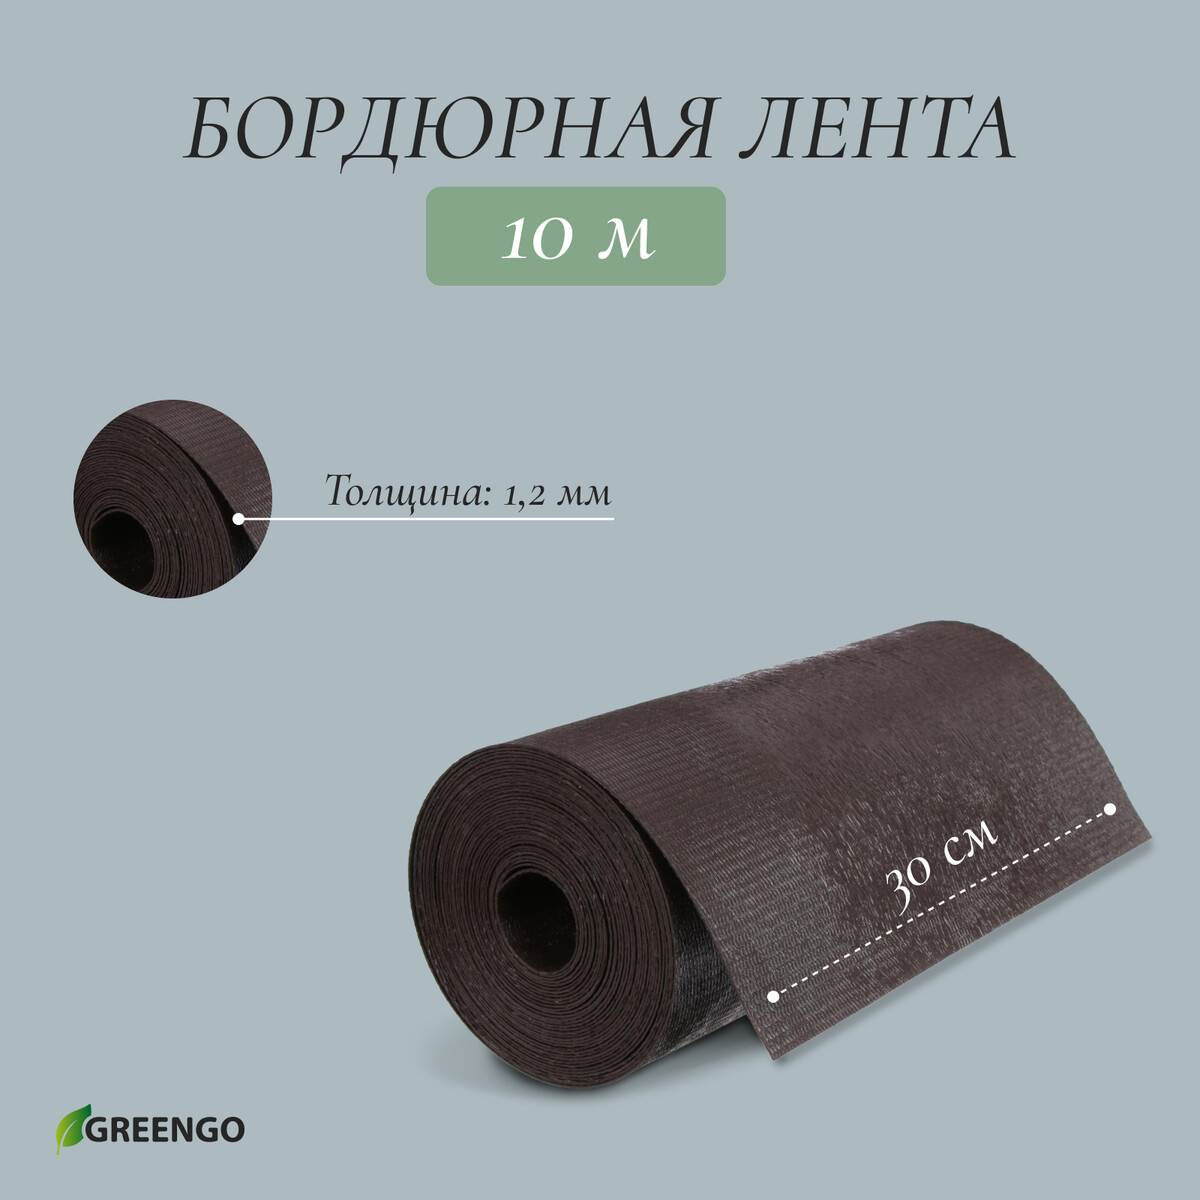 Лента бордюрная, 0.3 × 10 м, толщина 1.2 мм, пластиковая, коричневая, greengo лента бордюрная 0 15 × 9 м толщина 1 2 мм пластиковая фигурная коричневая